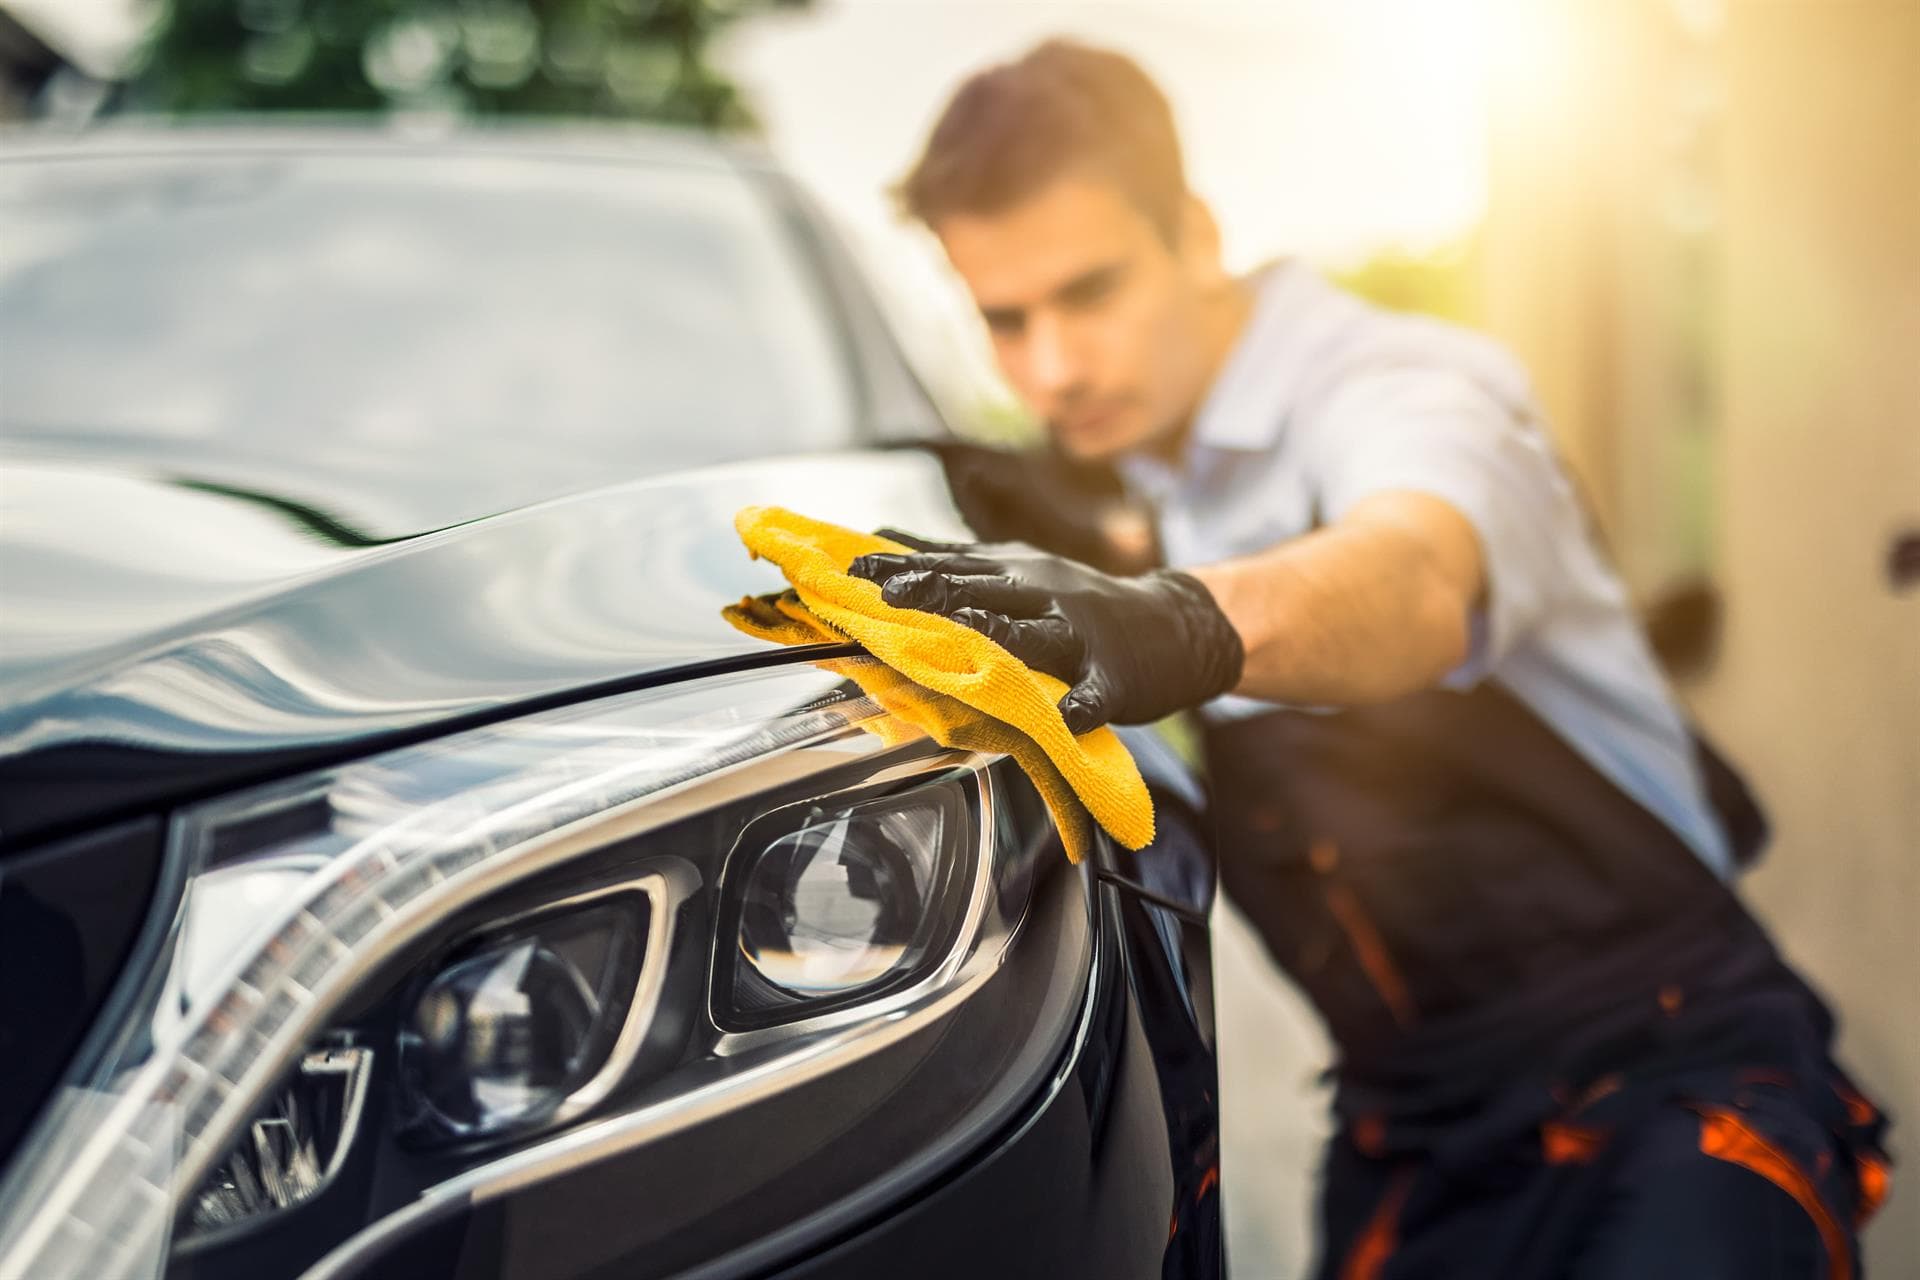 Talleres lahoz - ¿En qué consiste limpiar los faros del coche?